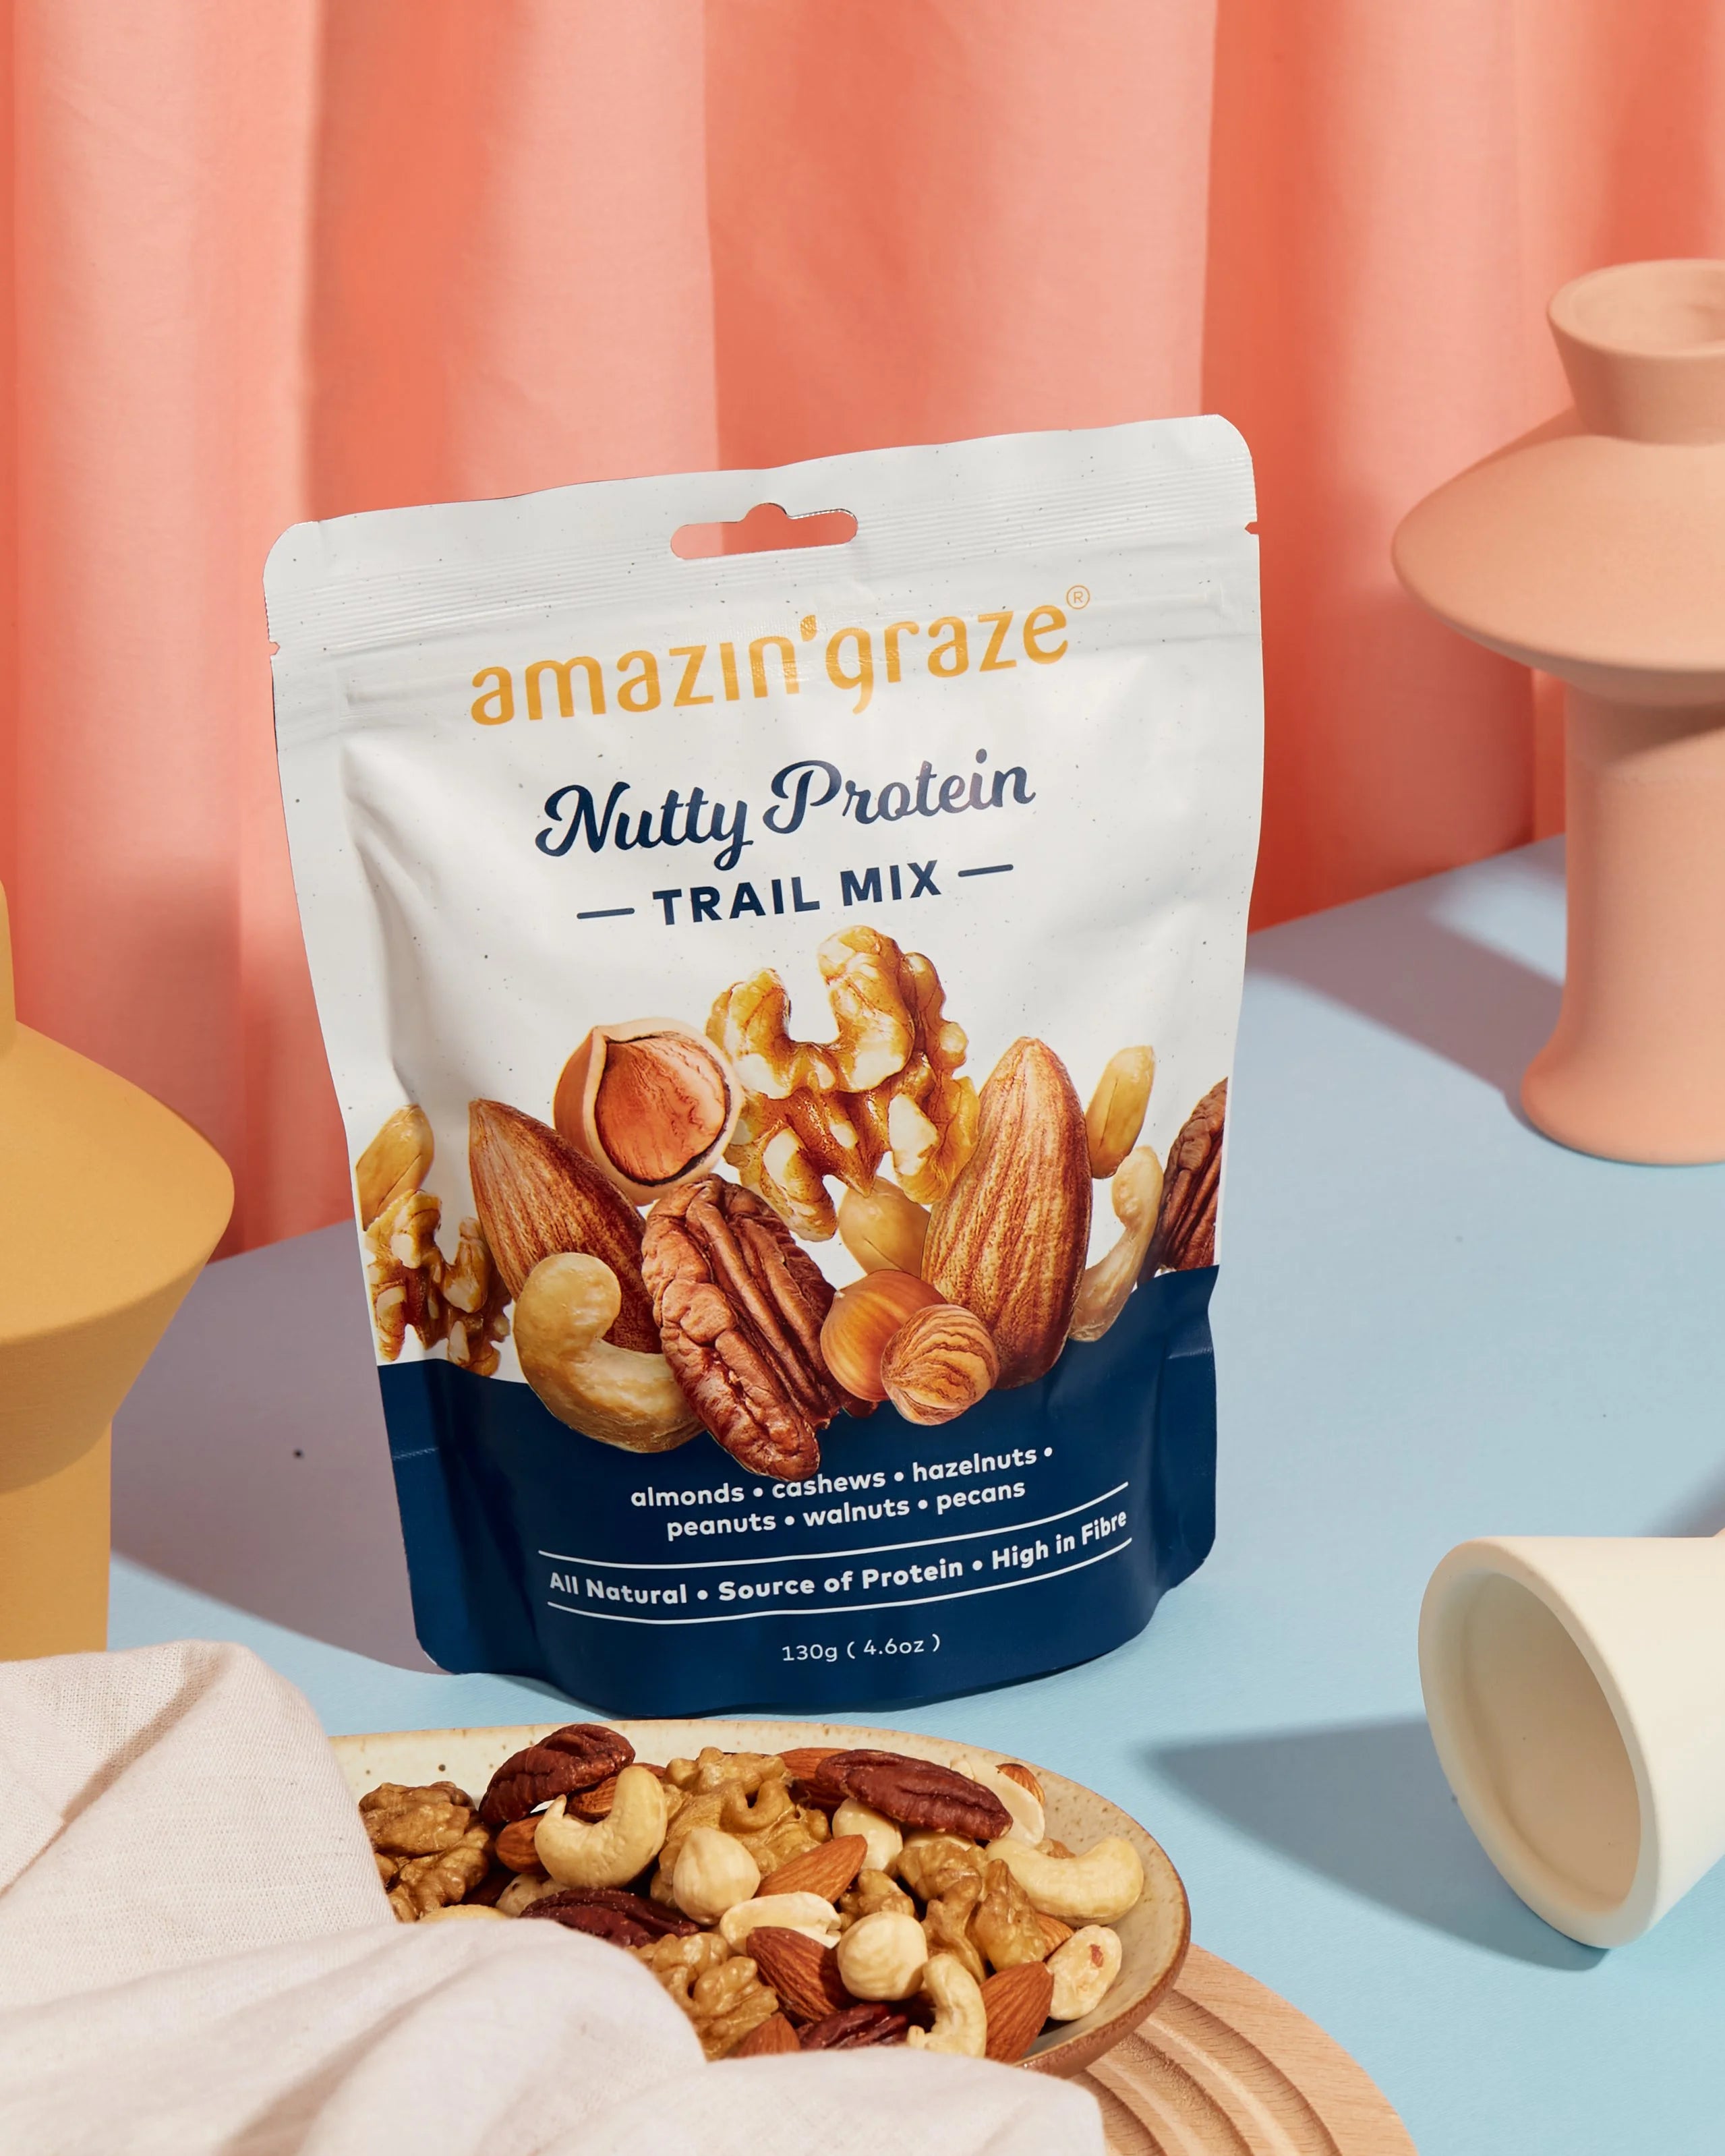 Nutty Protein Trail Mix - Amazin' Graze Malaysia